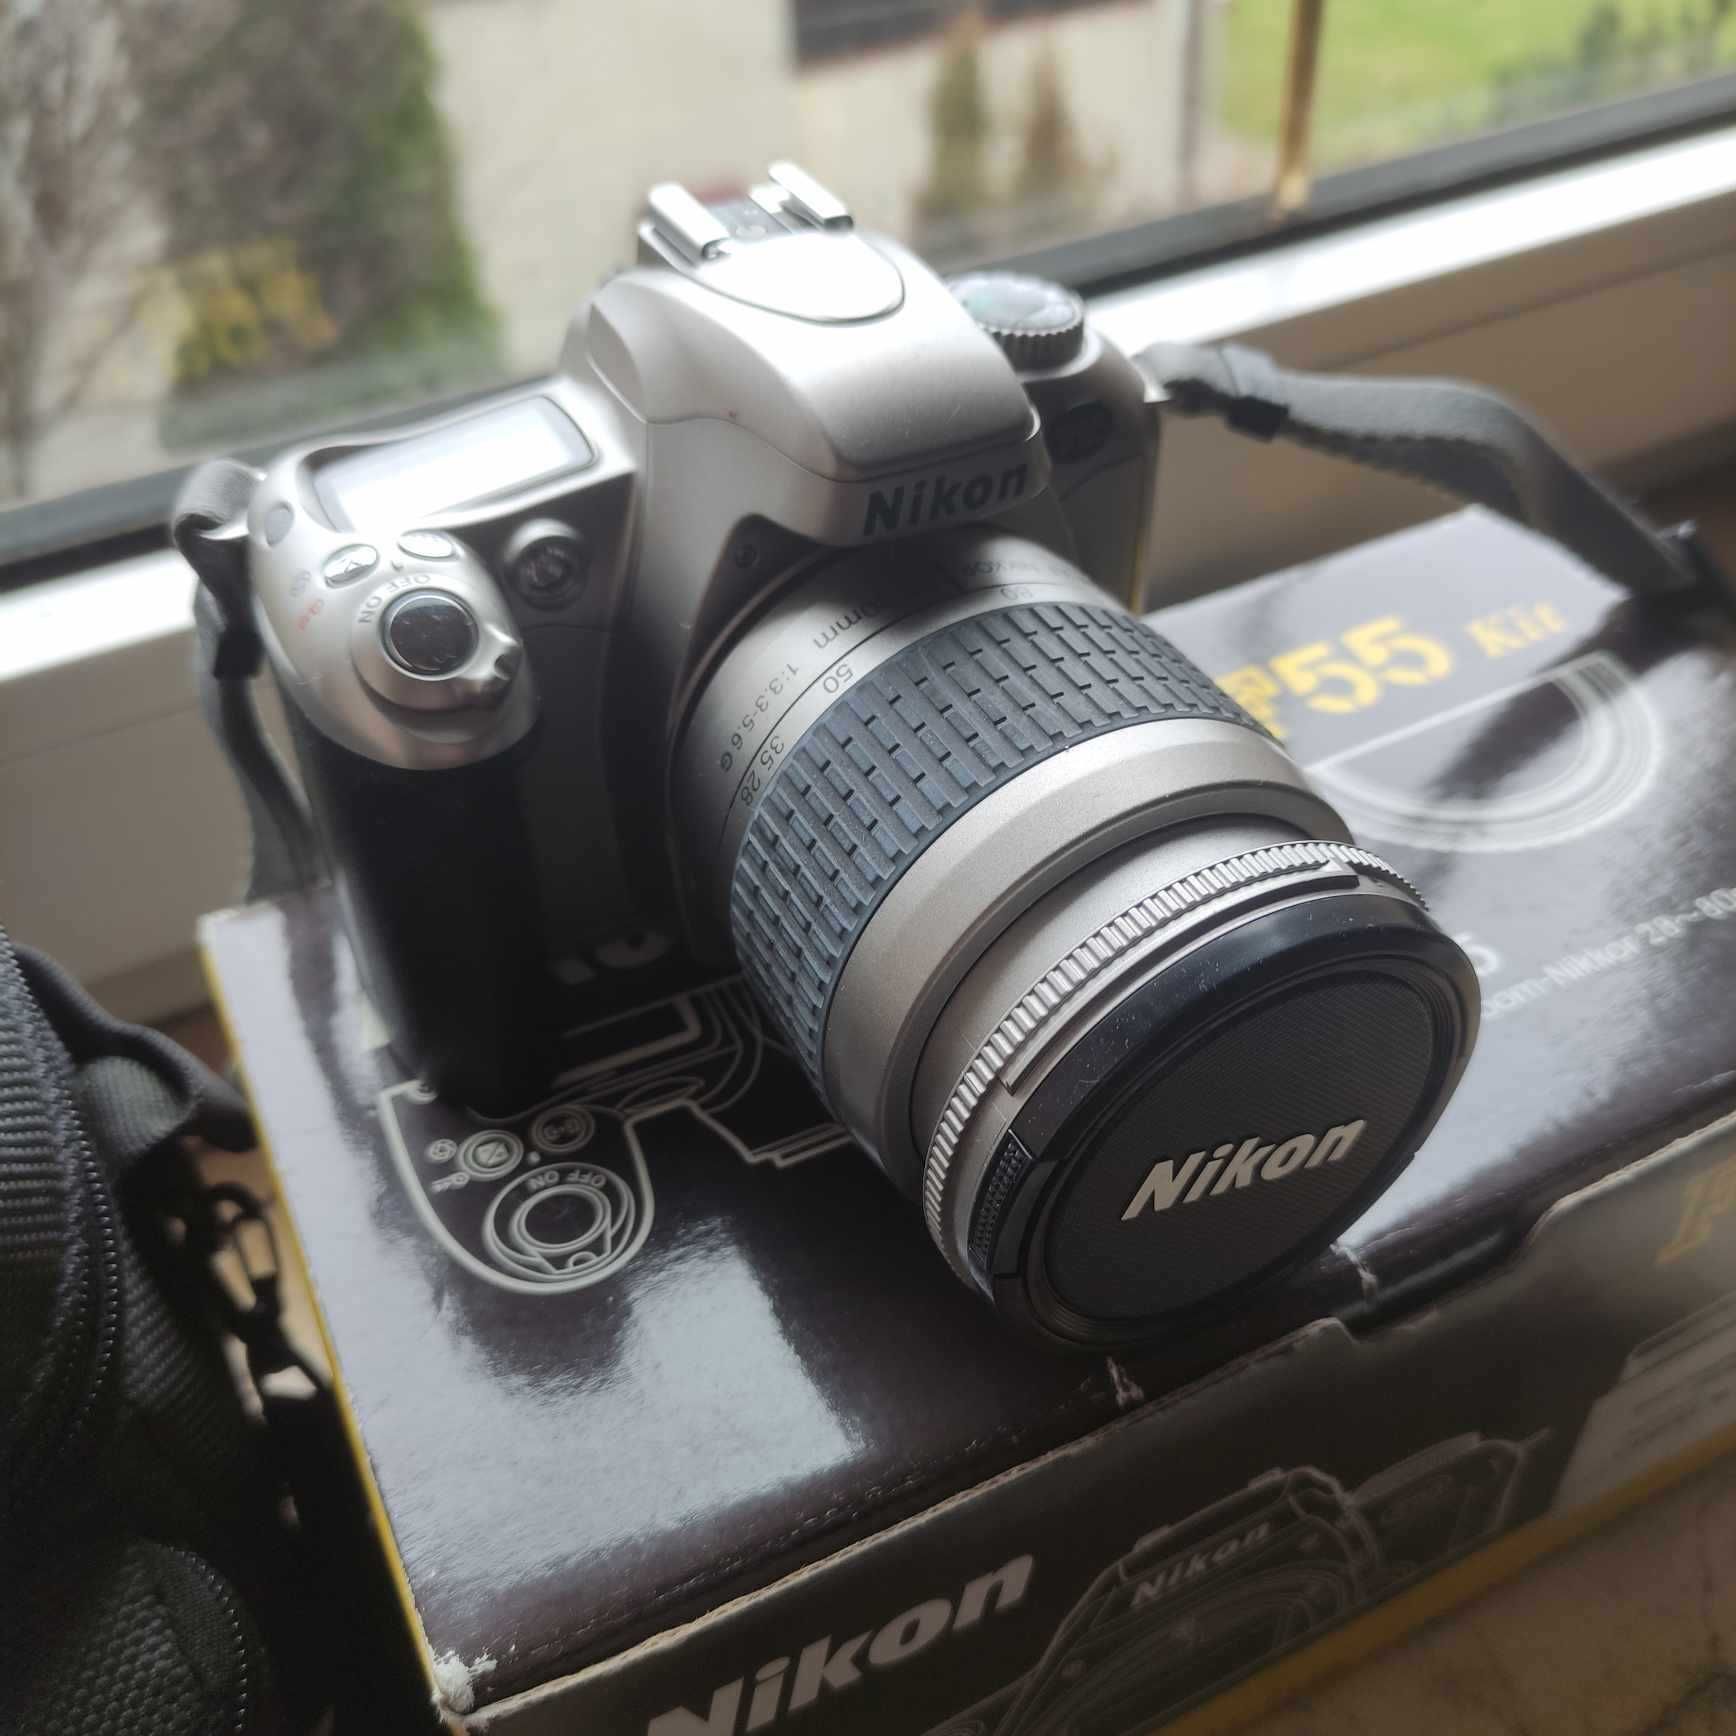 Aparat Nikon F55 z obiektywem